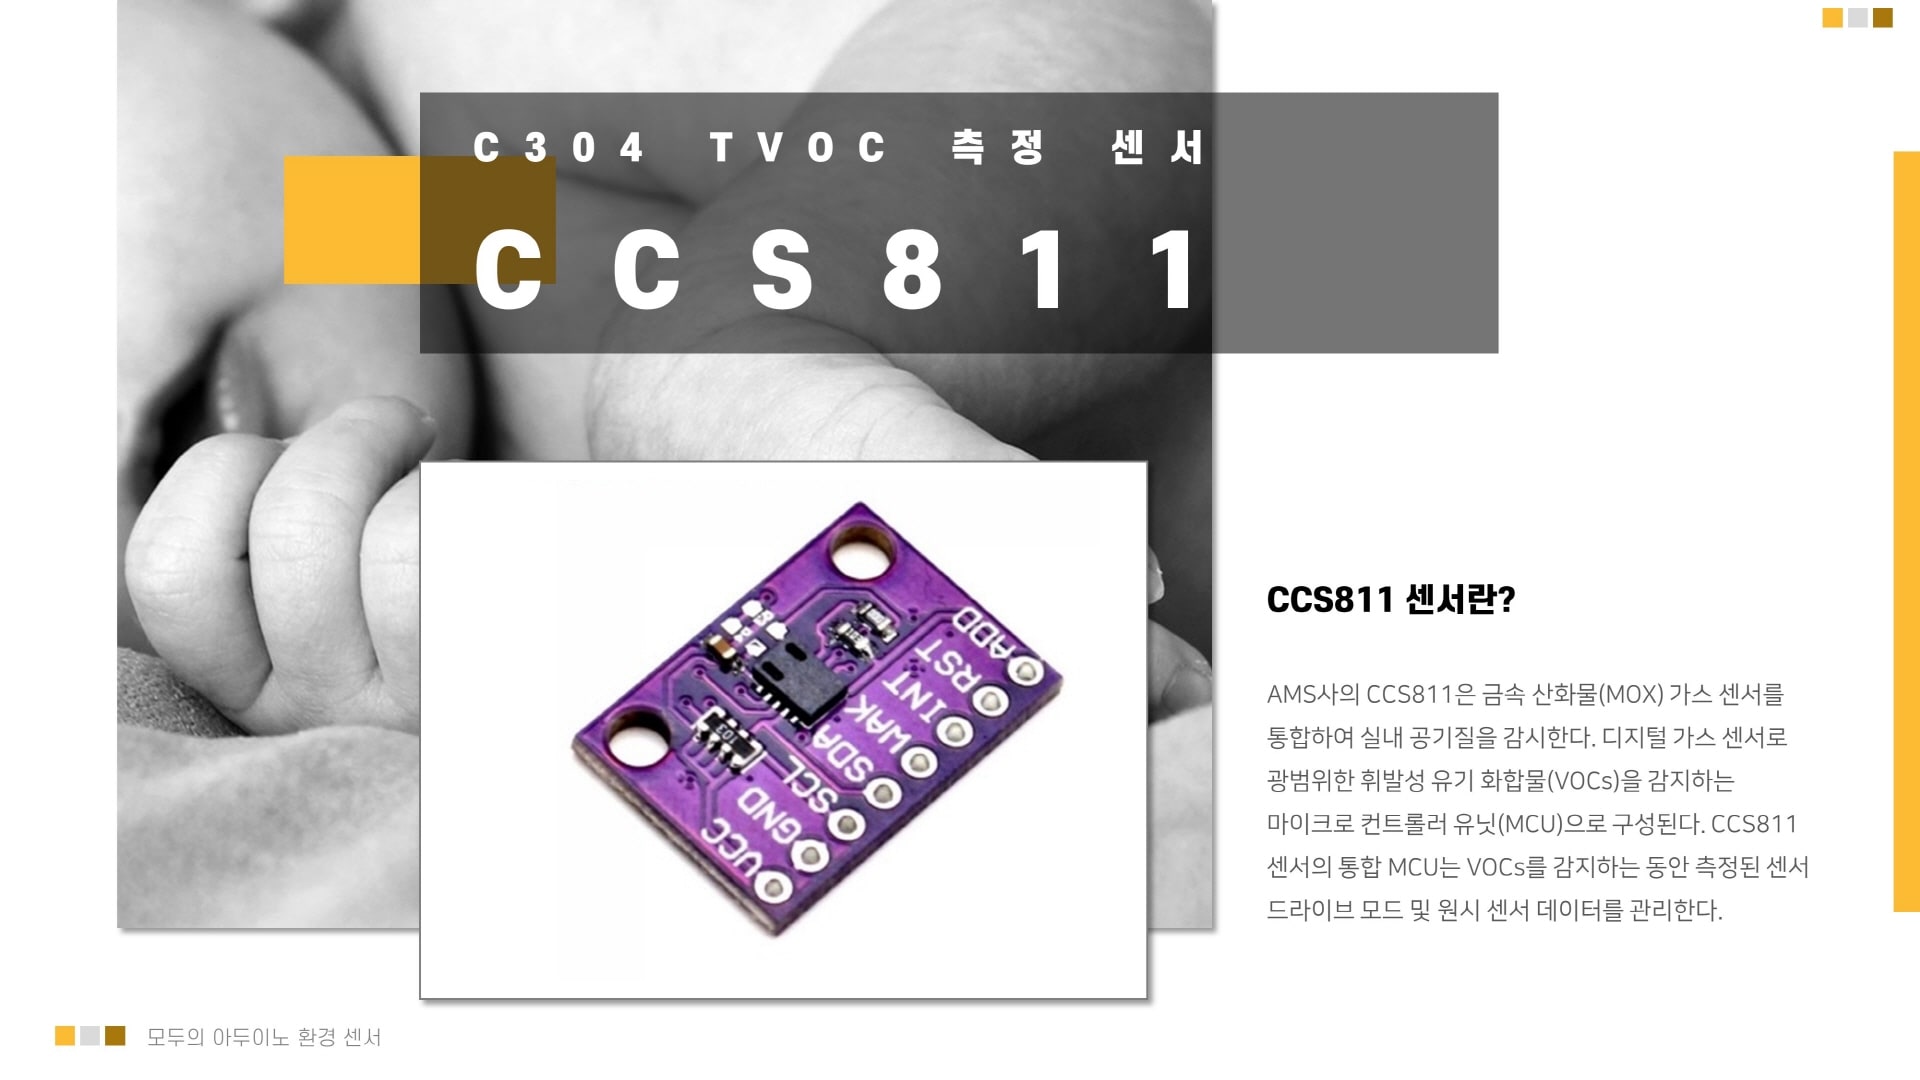 CCS811 TVOC(총휘발성유기화합물) 아두이노 센서 이미지 입니다.